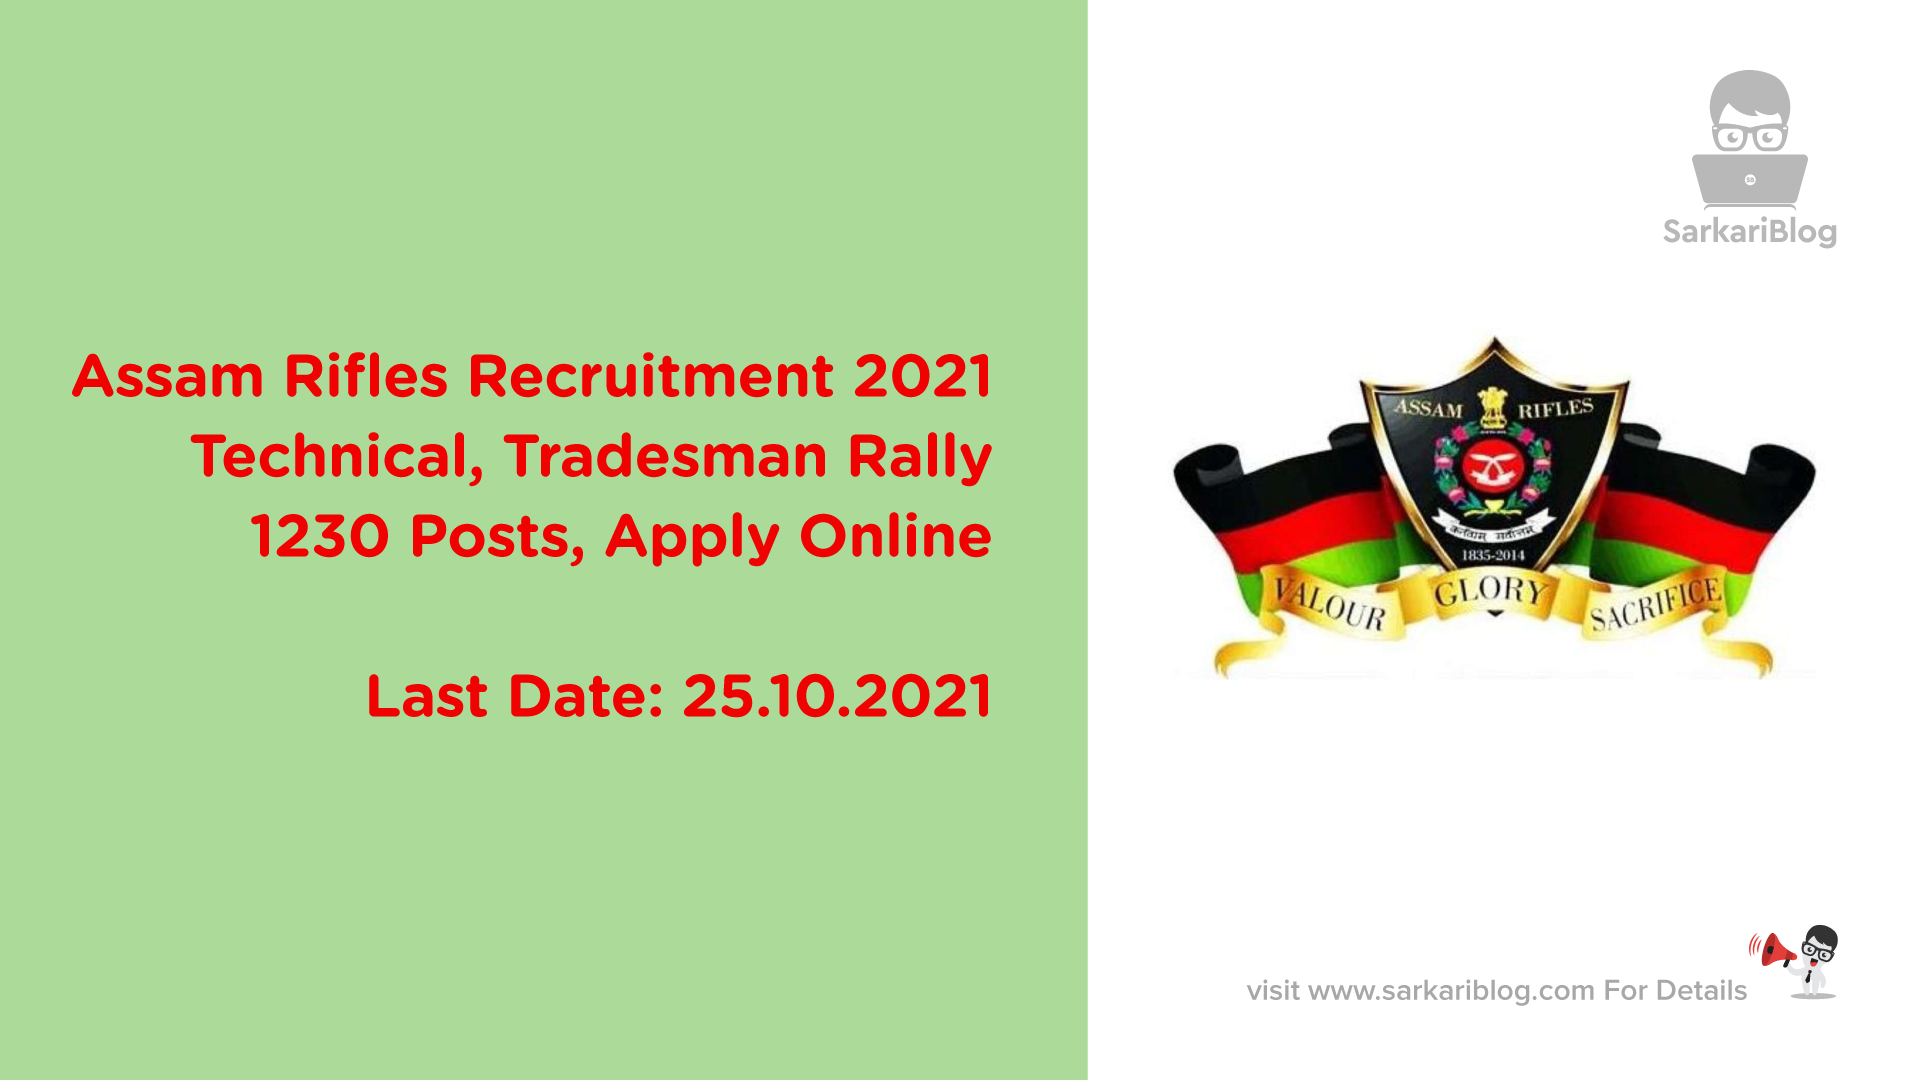 Assam Rifles Recruitment 2021, Technical, Tradesman Rally, 1230 Posts, Apply Online